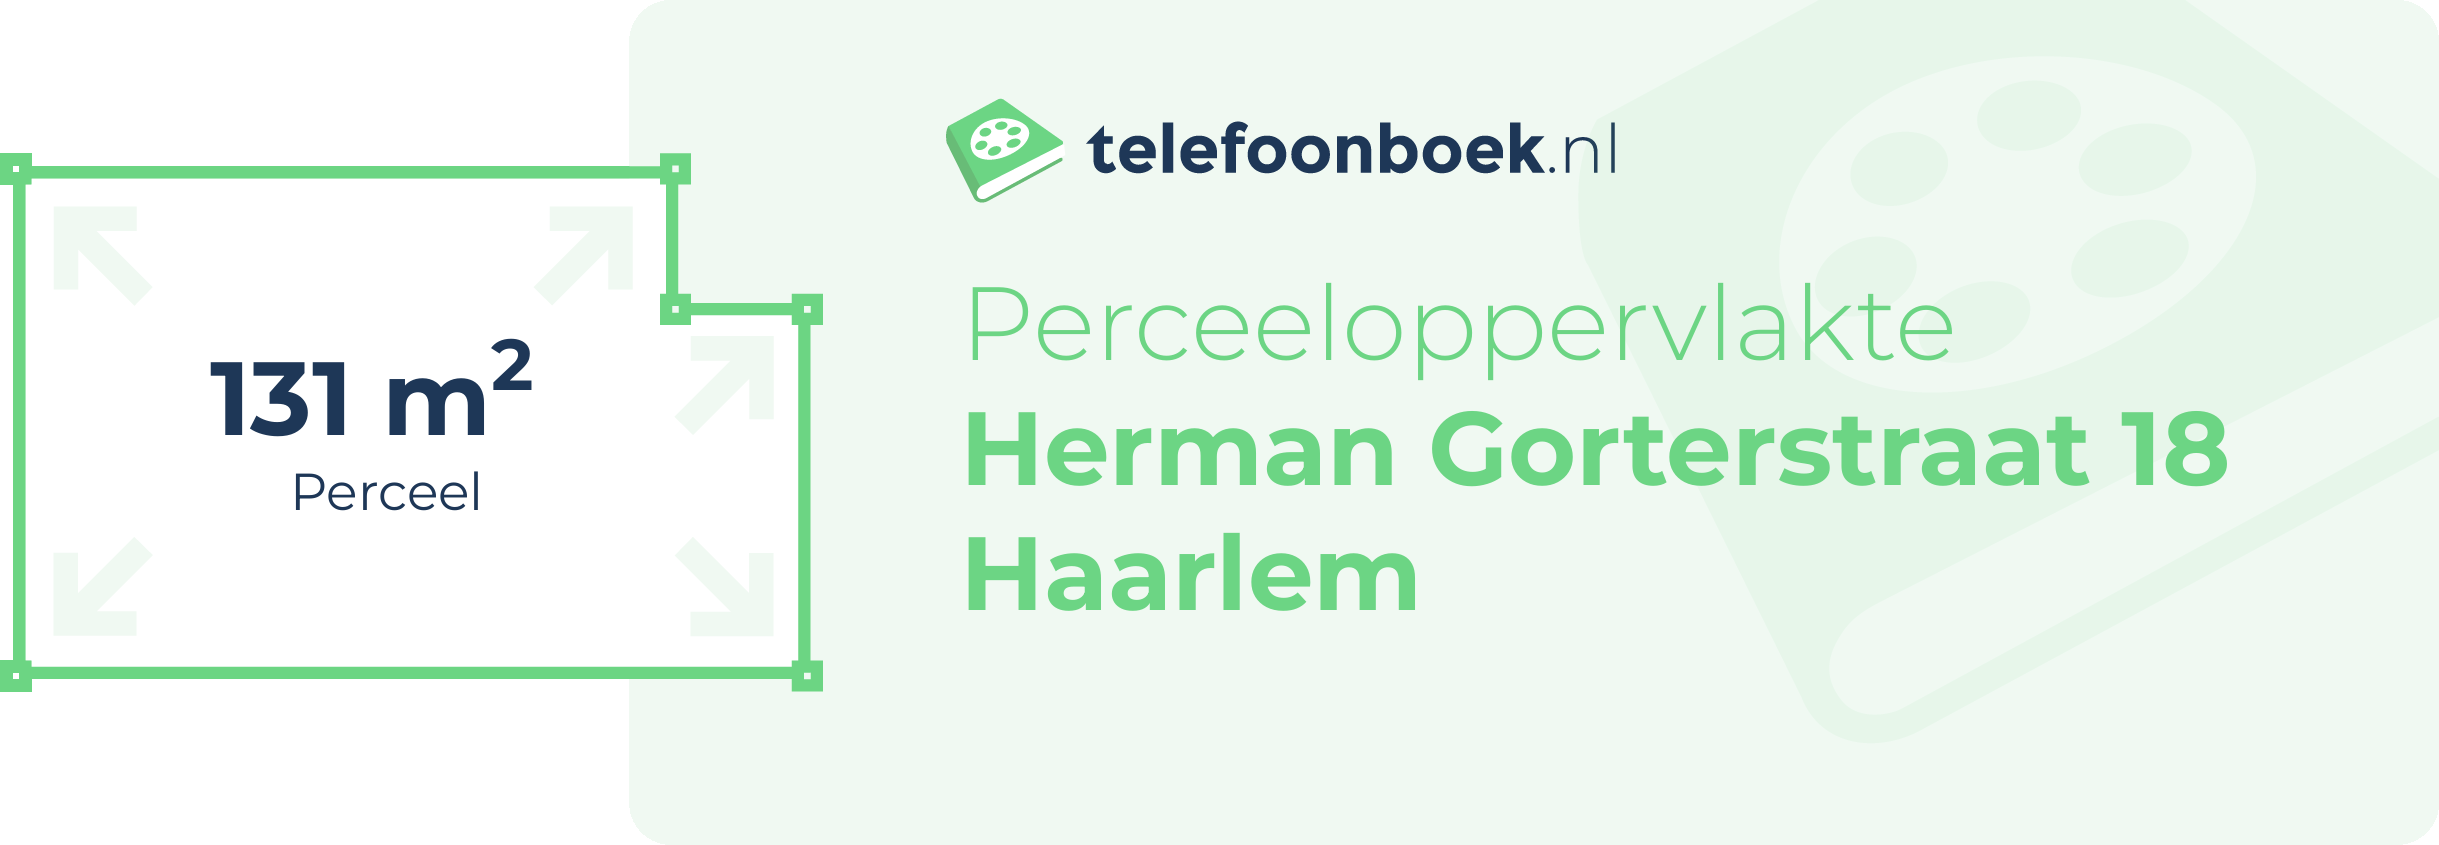 Perceeloppervlakte Herman Gorterstraat 18 Haarlem